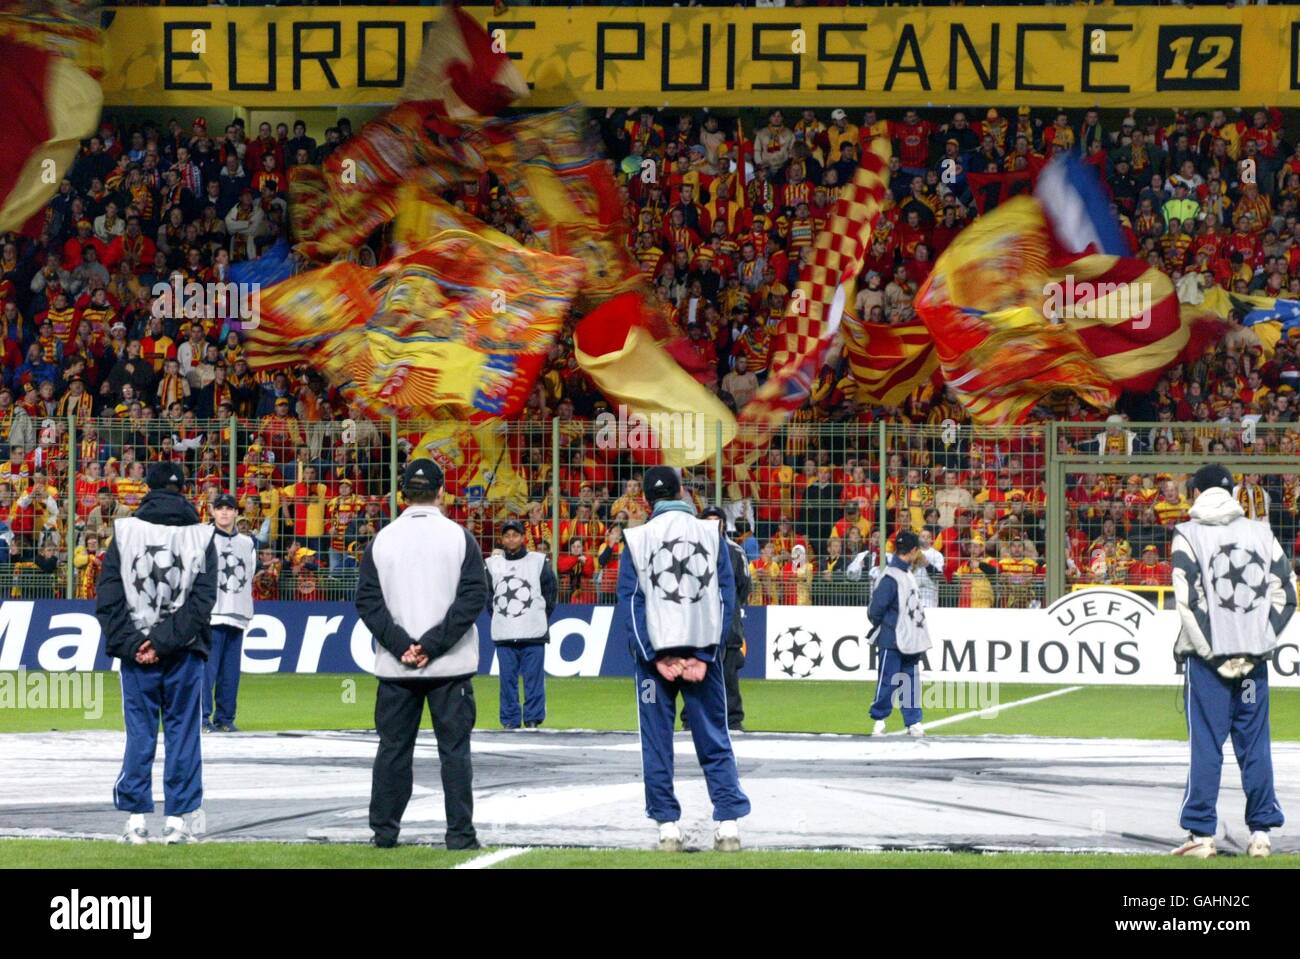 Football - UEFA Champions League - Groupe G - RC Lens v Deportivo la Coruna.Ballboys entoure le logo de la star géante dans le cercle central Banque D'Images